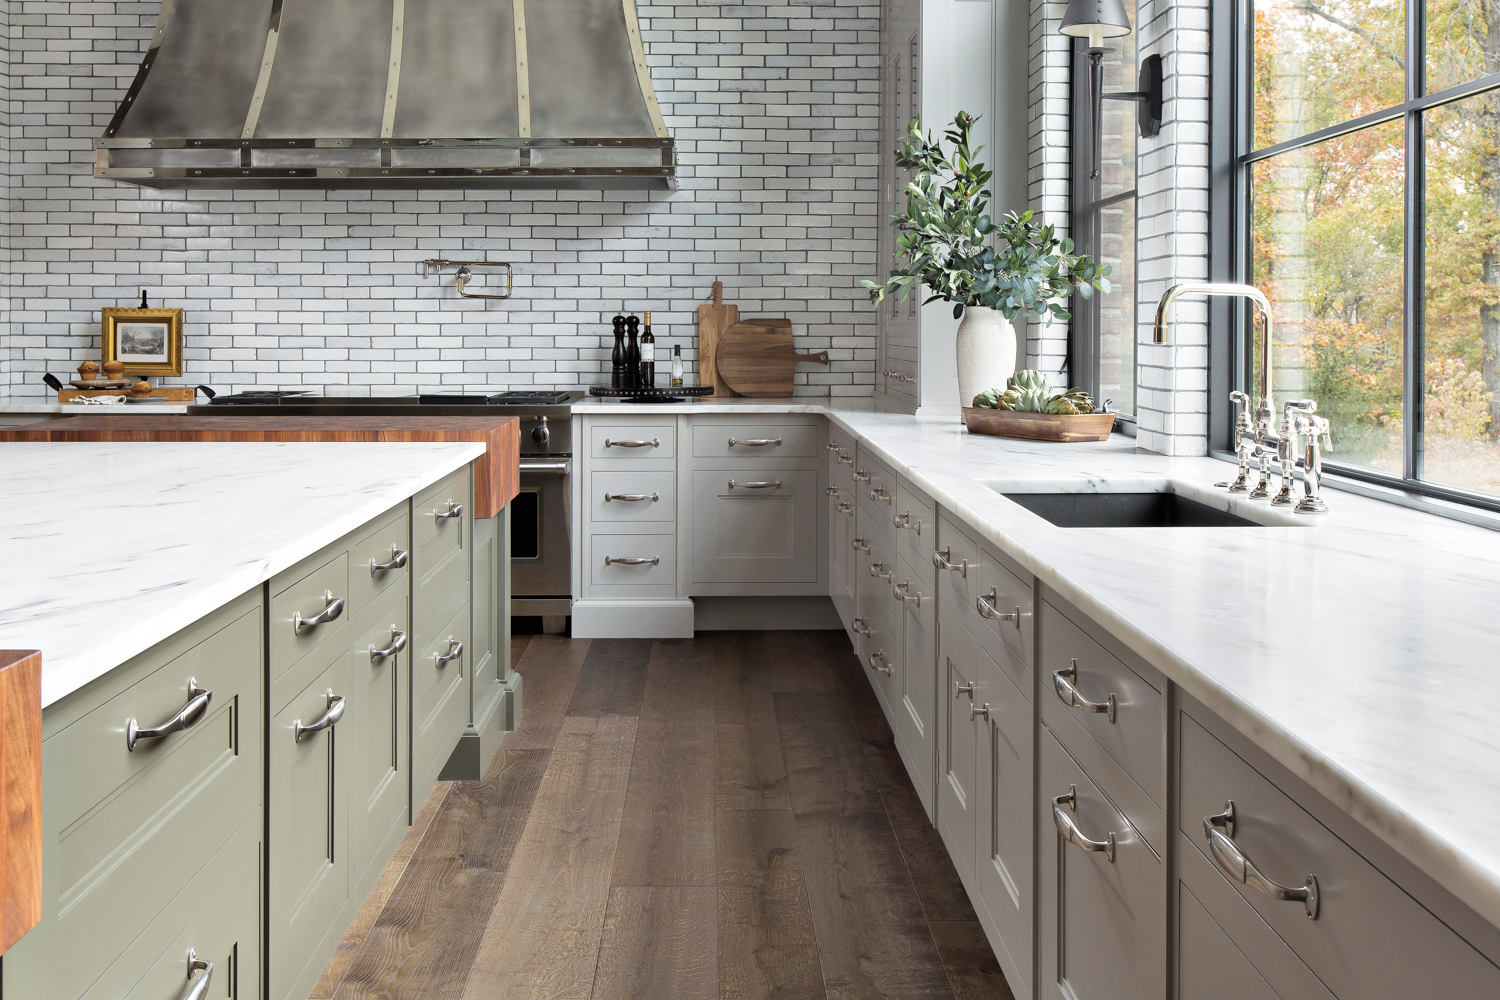 sage green kitchen cabinets with statement metal range hood and tile backsplash